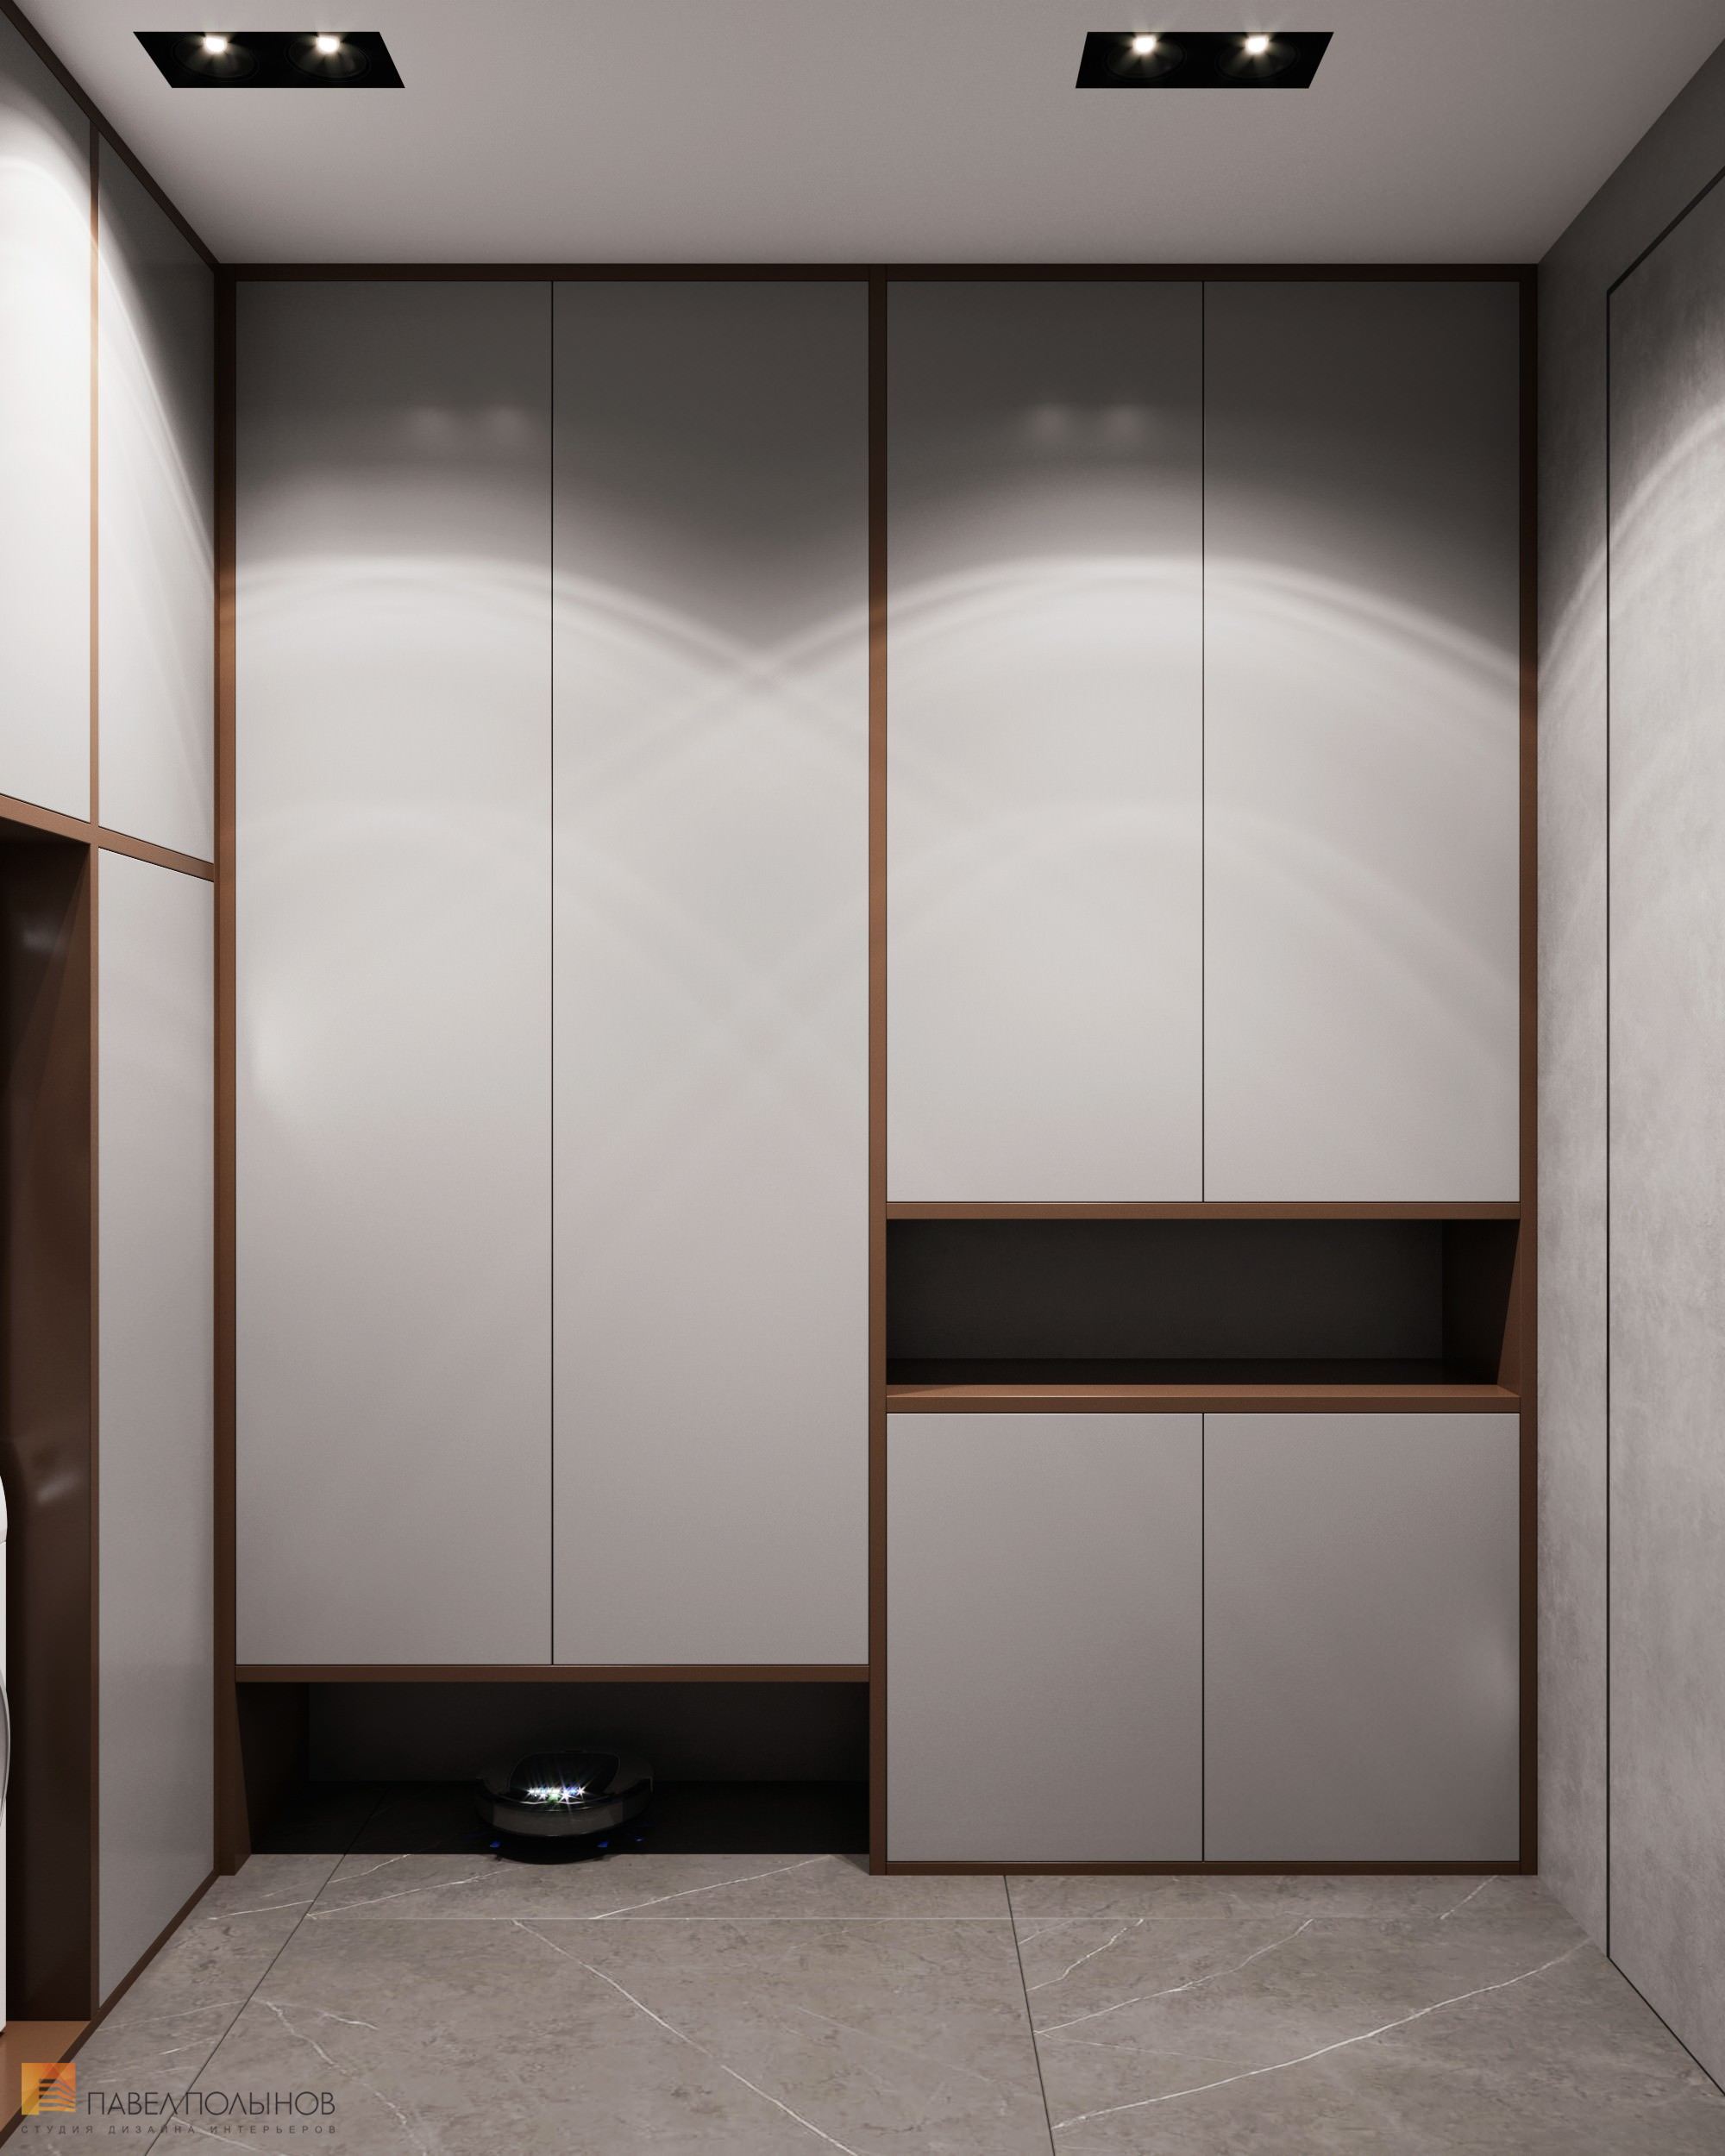 Фото дизайн хозяйственной комнаты из проекта «Дизайн интерьера квартиры в ЖК «Крестовский Deluxe», современный стиль, 233 кв.м.»